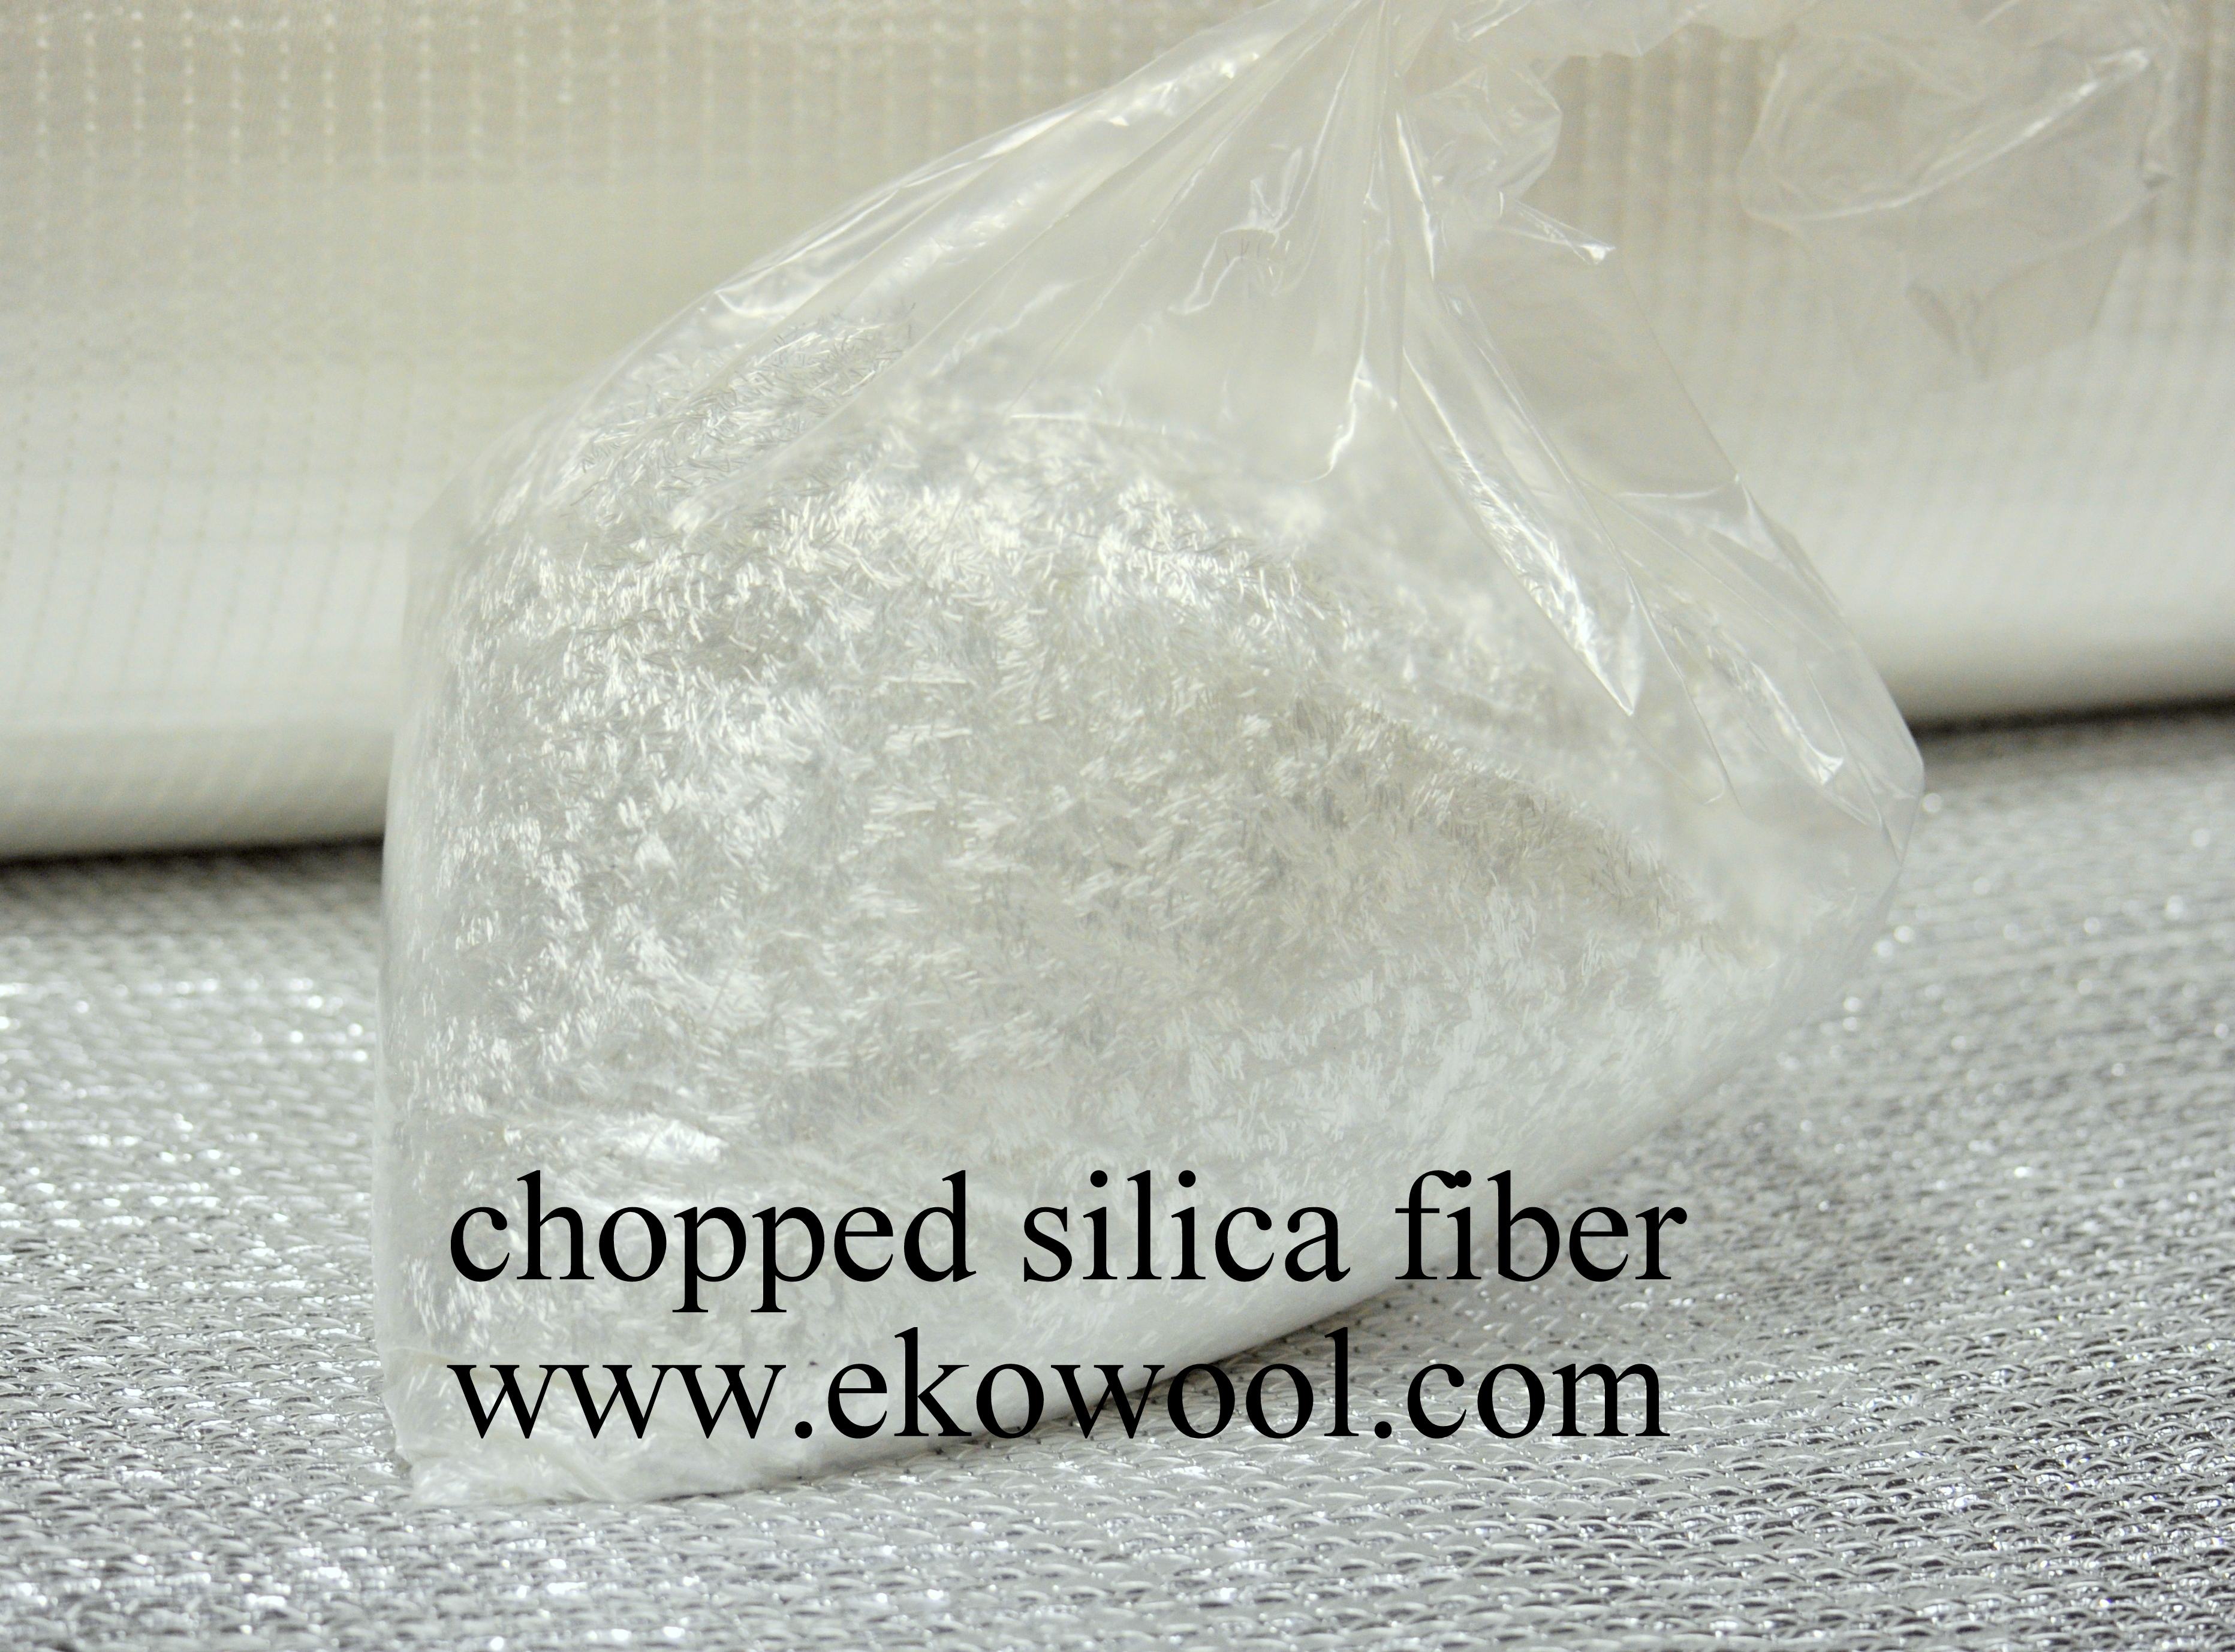 chopped silica fiber strands